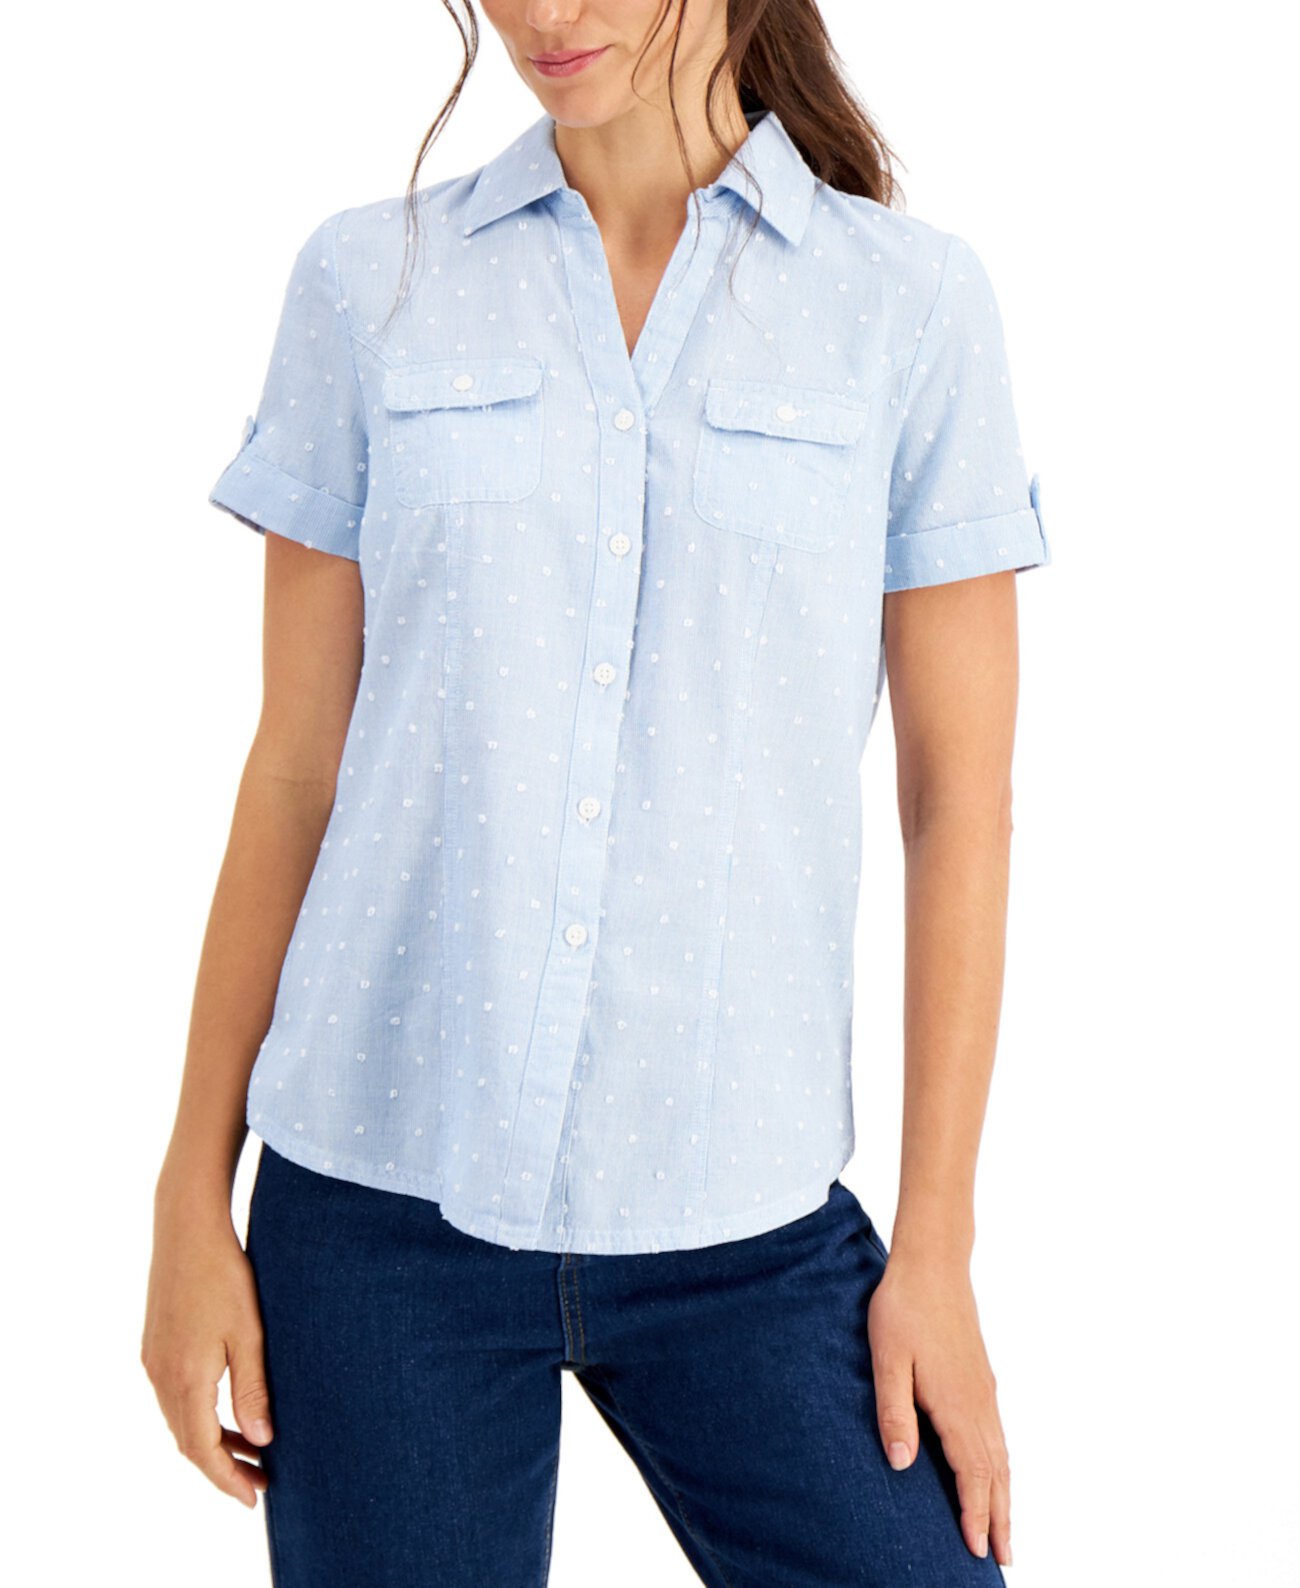 Миниатюрная рубашка с хлопковым принтом в горошек, созданная для Macy's Karen Scott